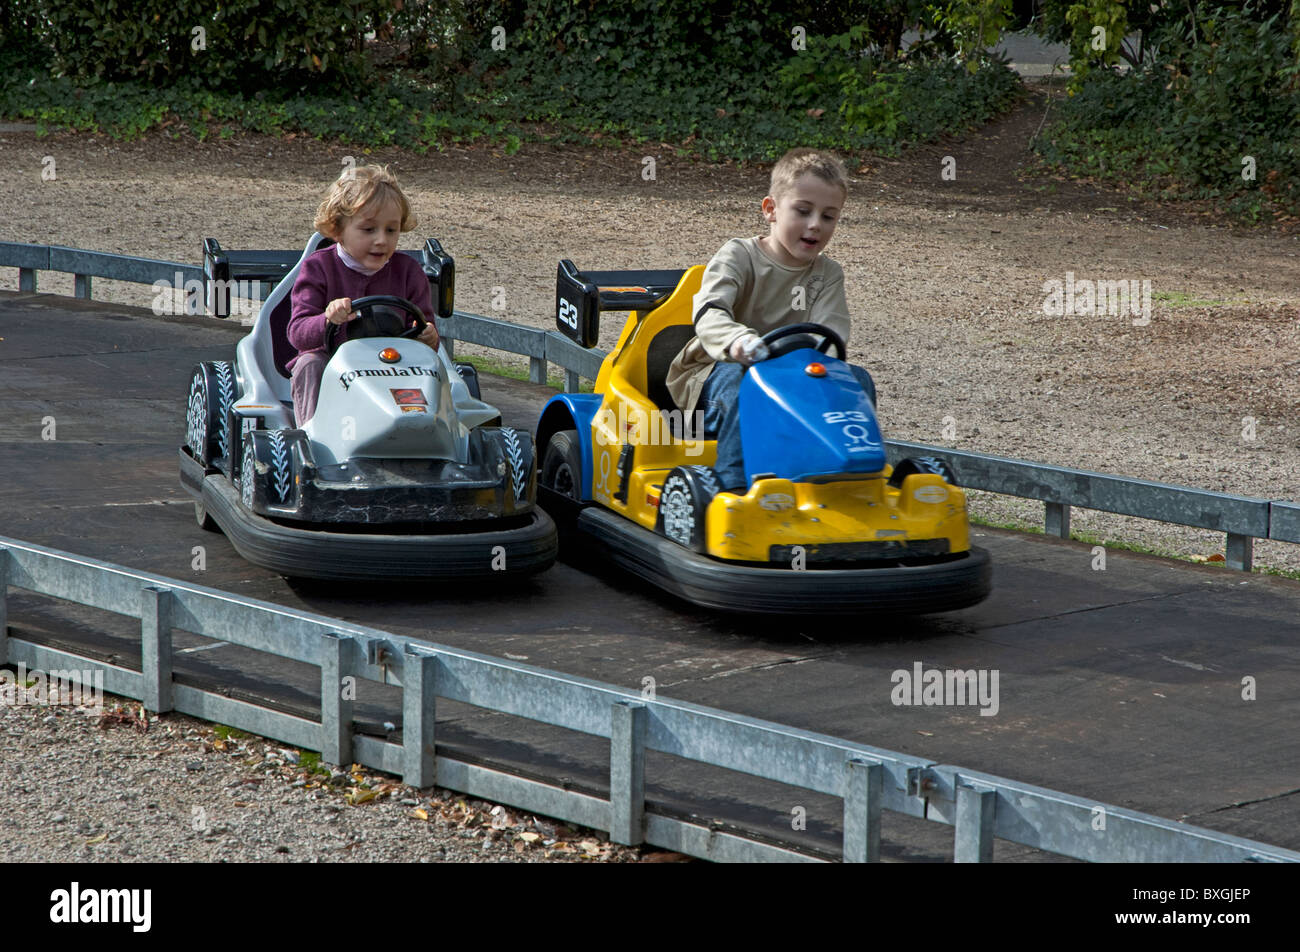 Two children speeding in go karts in an amusement park. Stock Photo